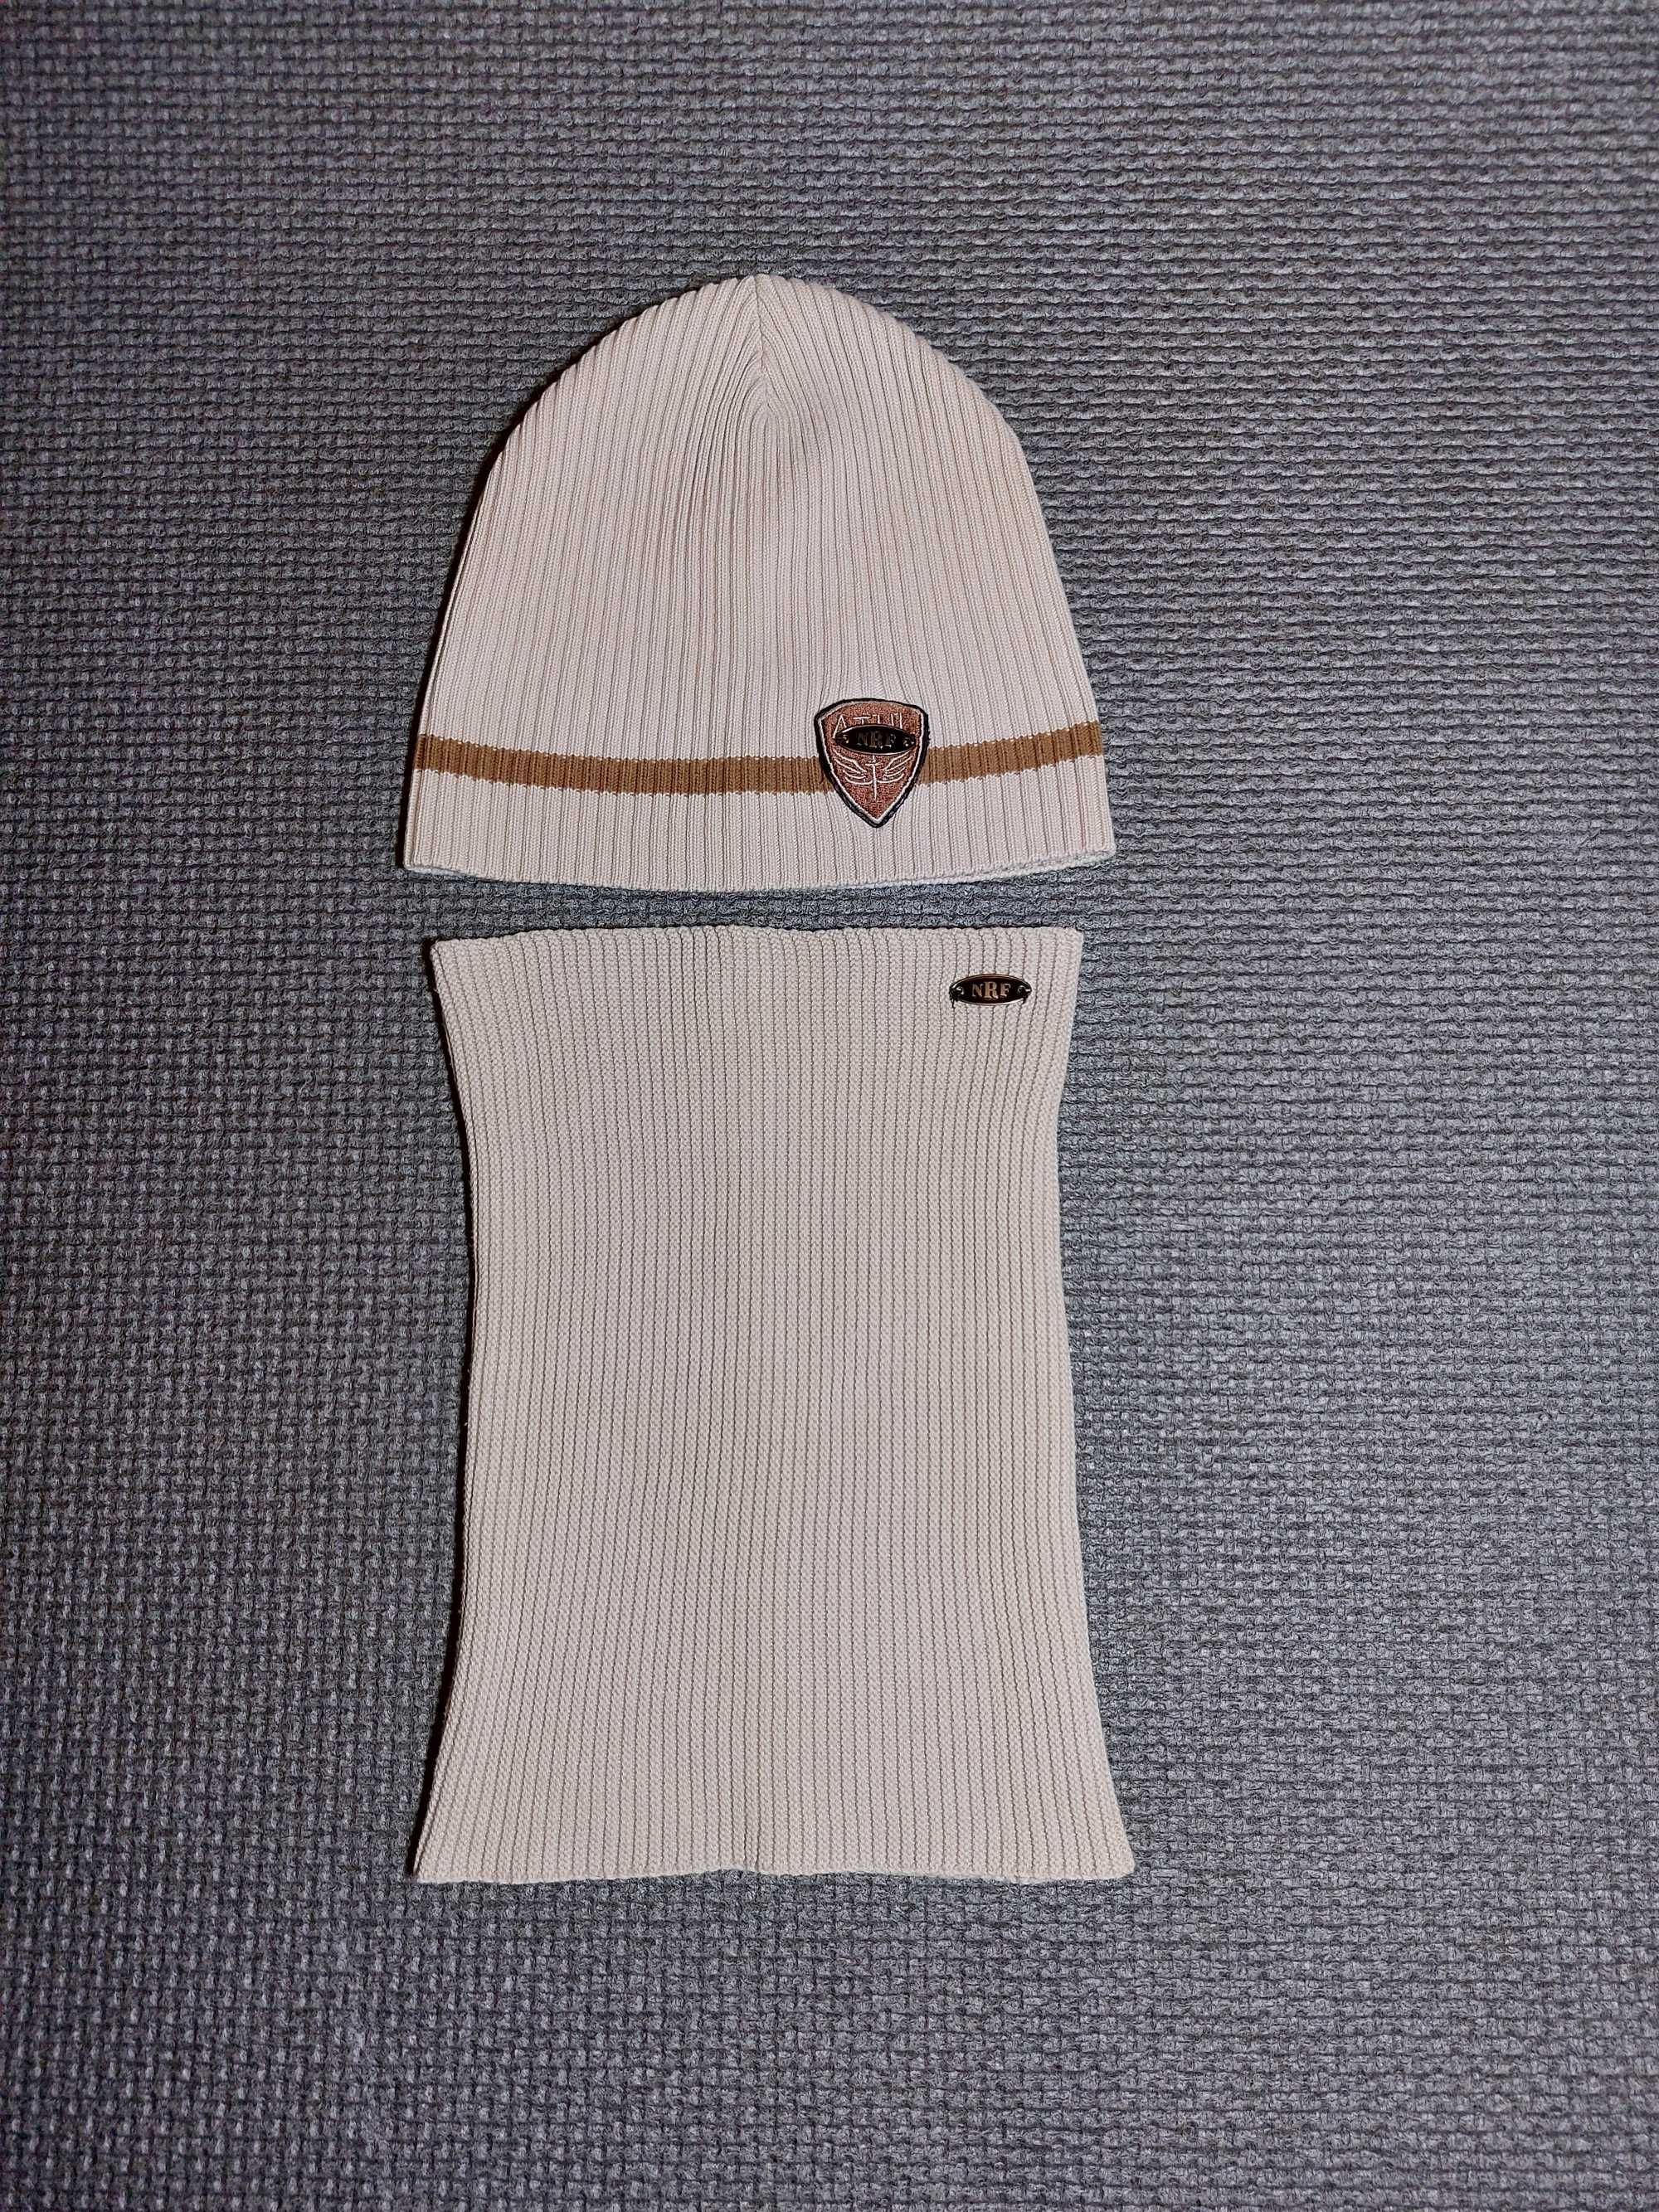 Дитяч.польський комплект: шапка та шарф-хомут в гарн.стані, розмір 52